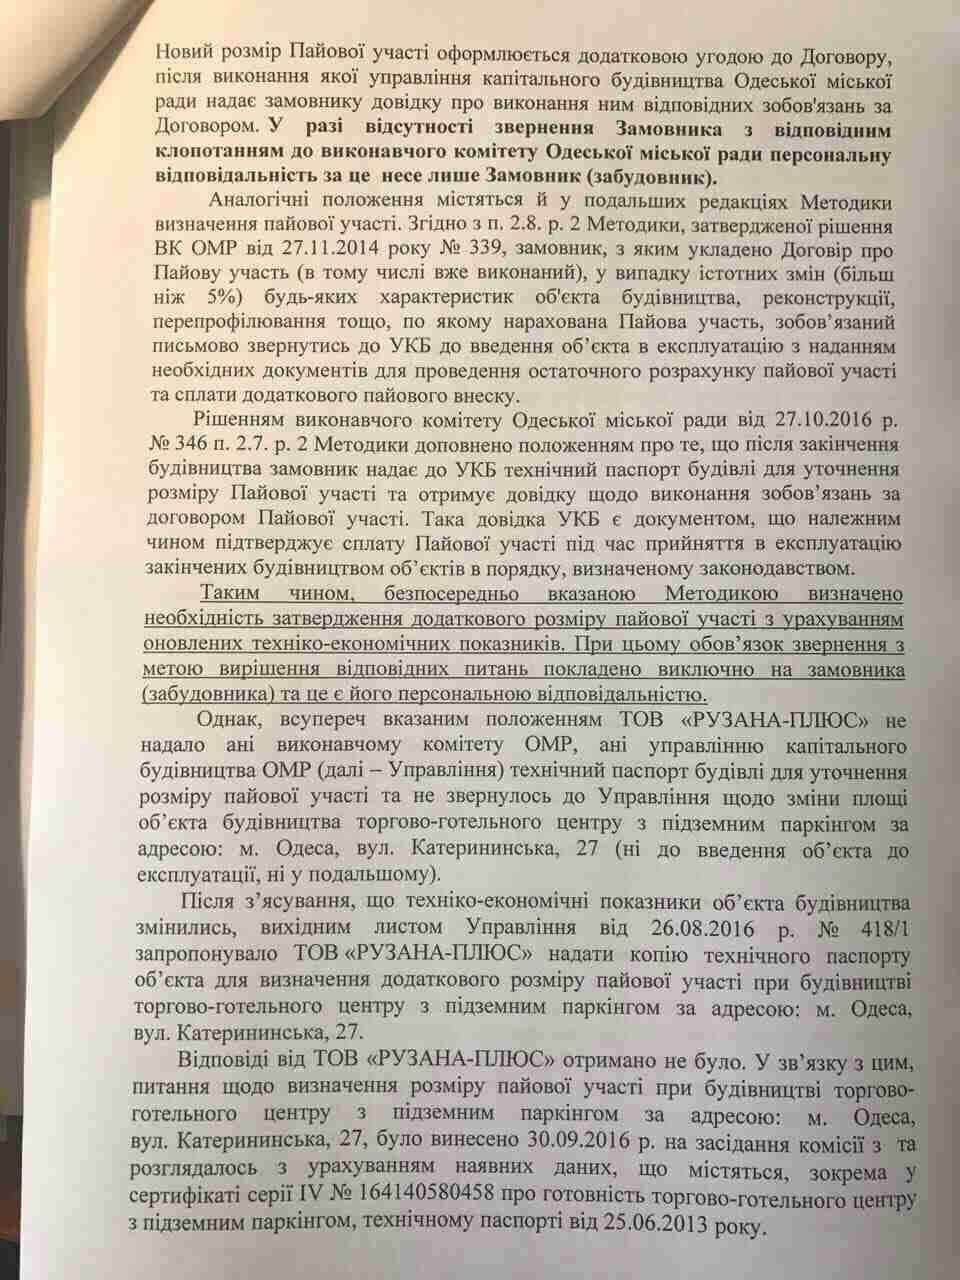 Мэрия Одессы через суд хочет взыскать у миллиардера Кивана деньги на развитие инфраструктуры